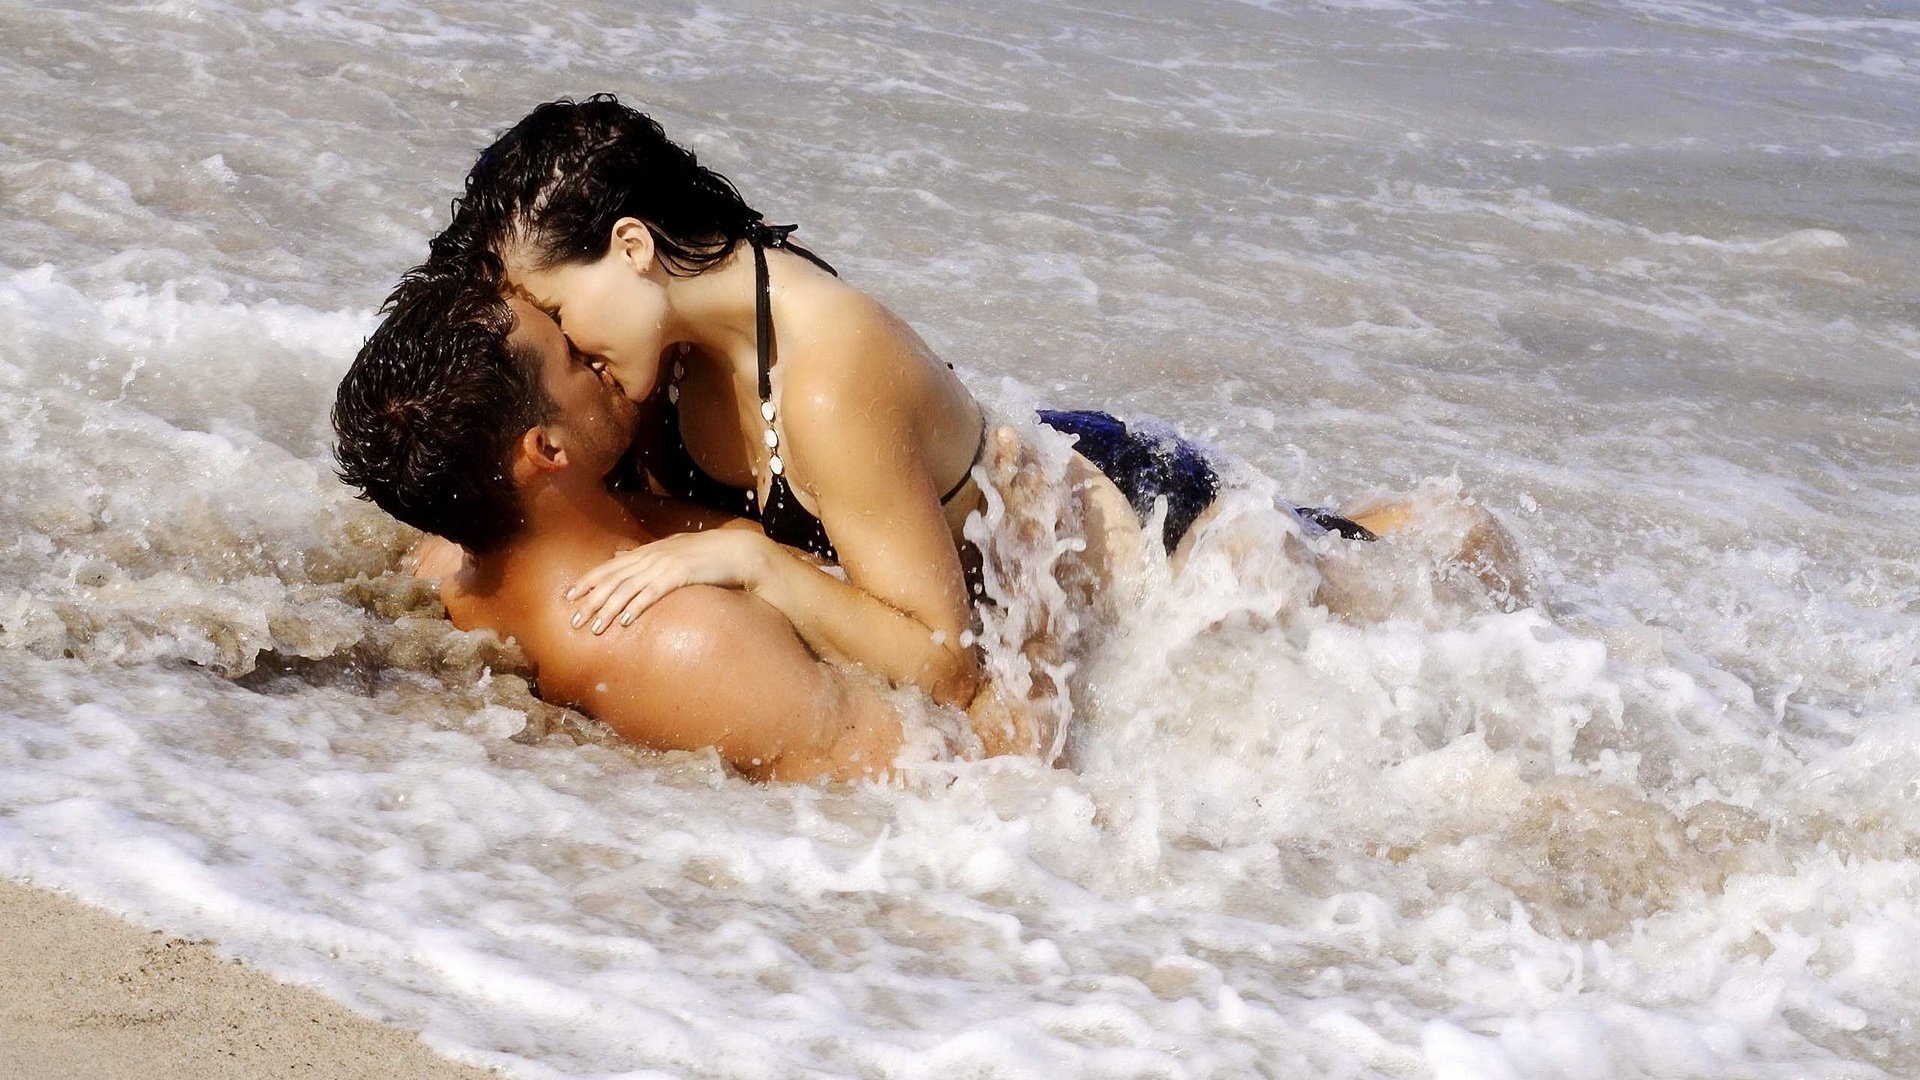 Райский уголок - брюнетка целуется и трахается с любовником на берегу океана где-то в дорогой вилле